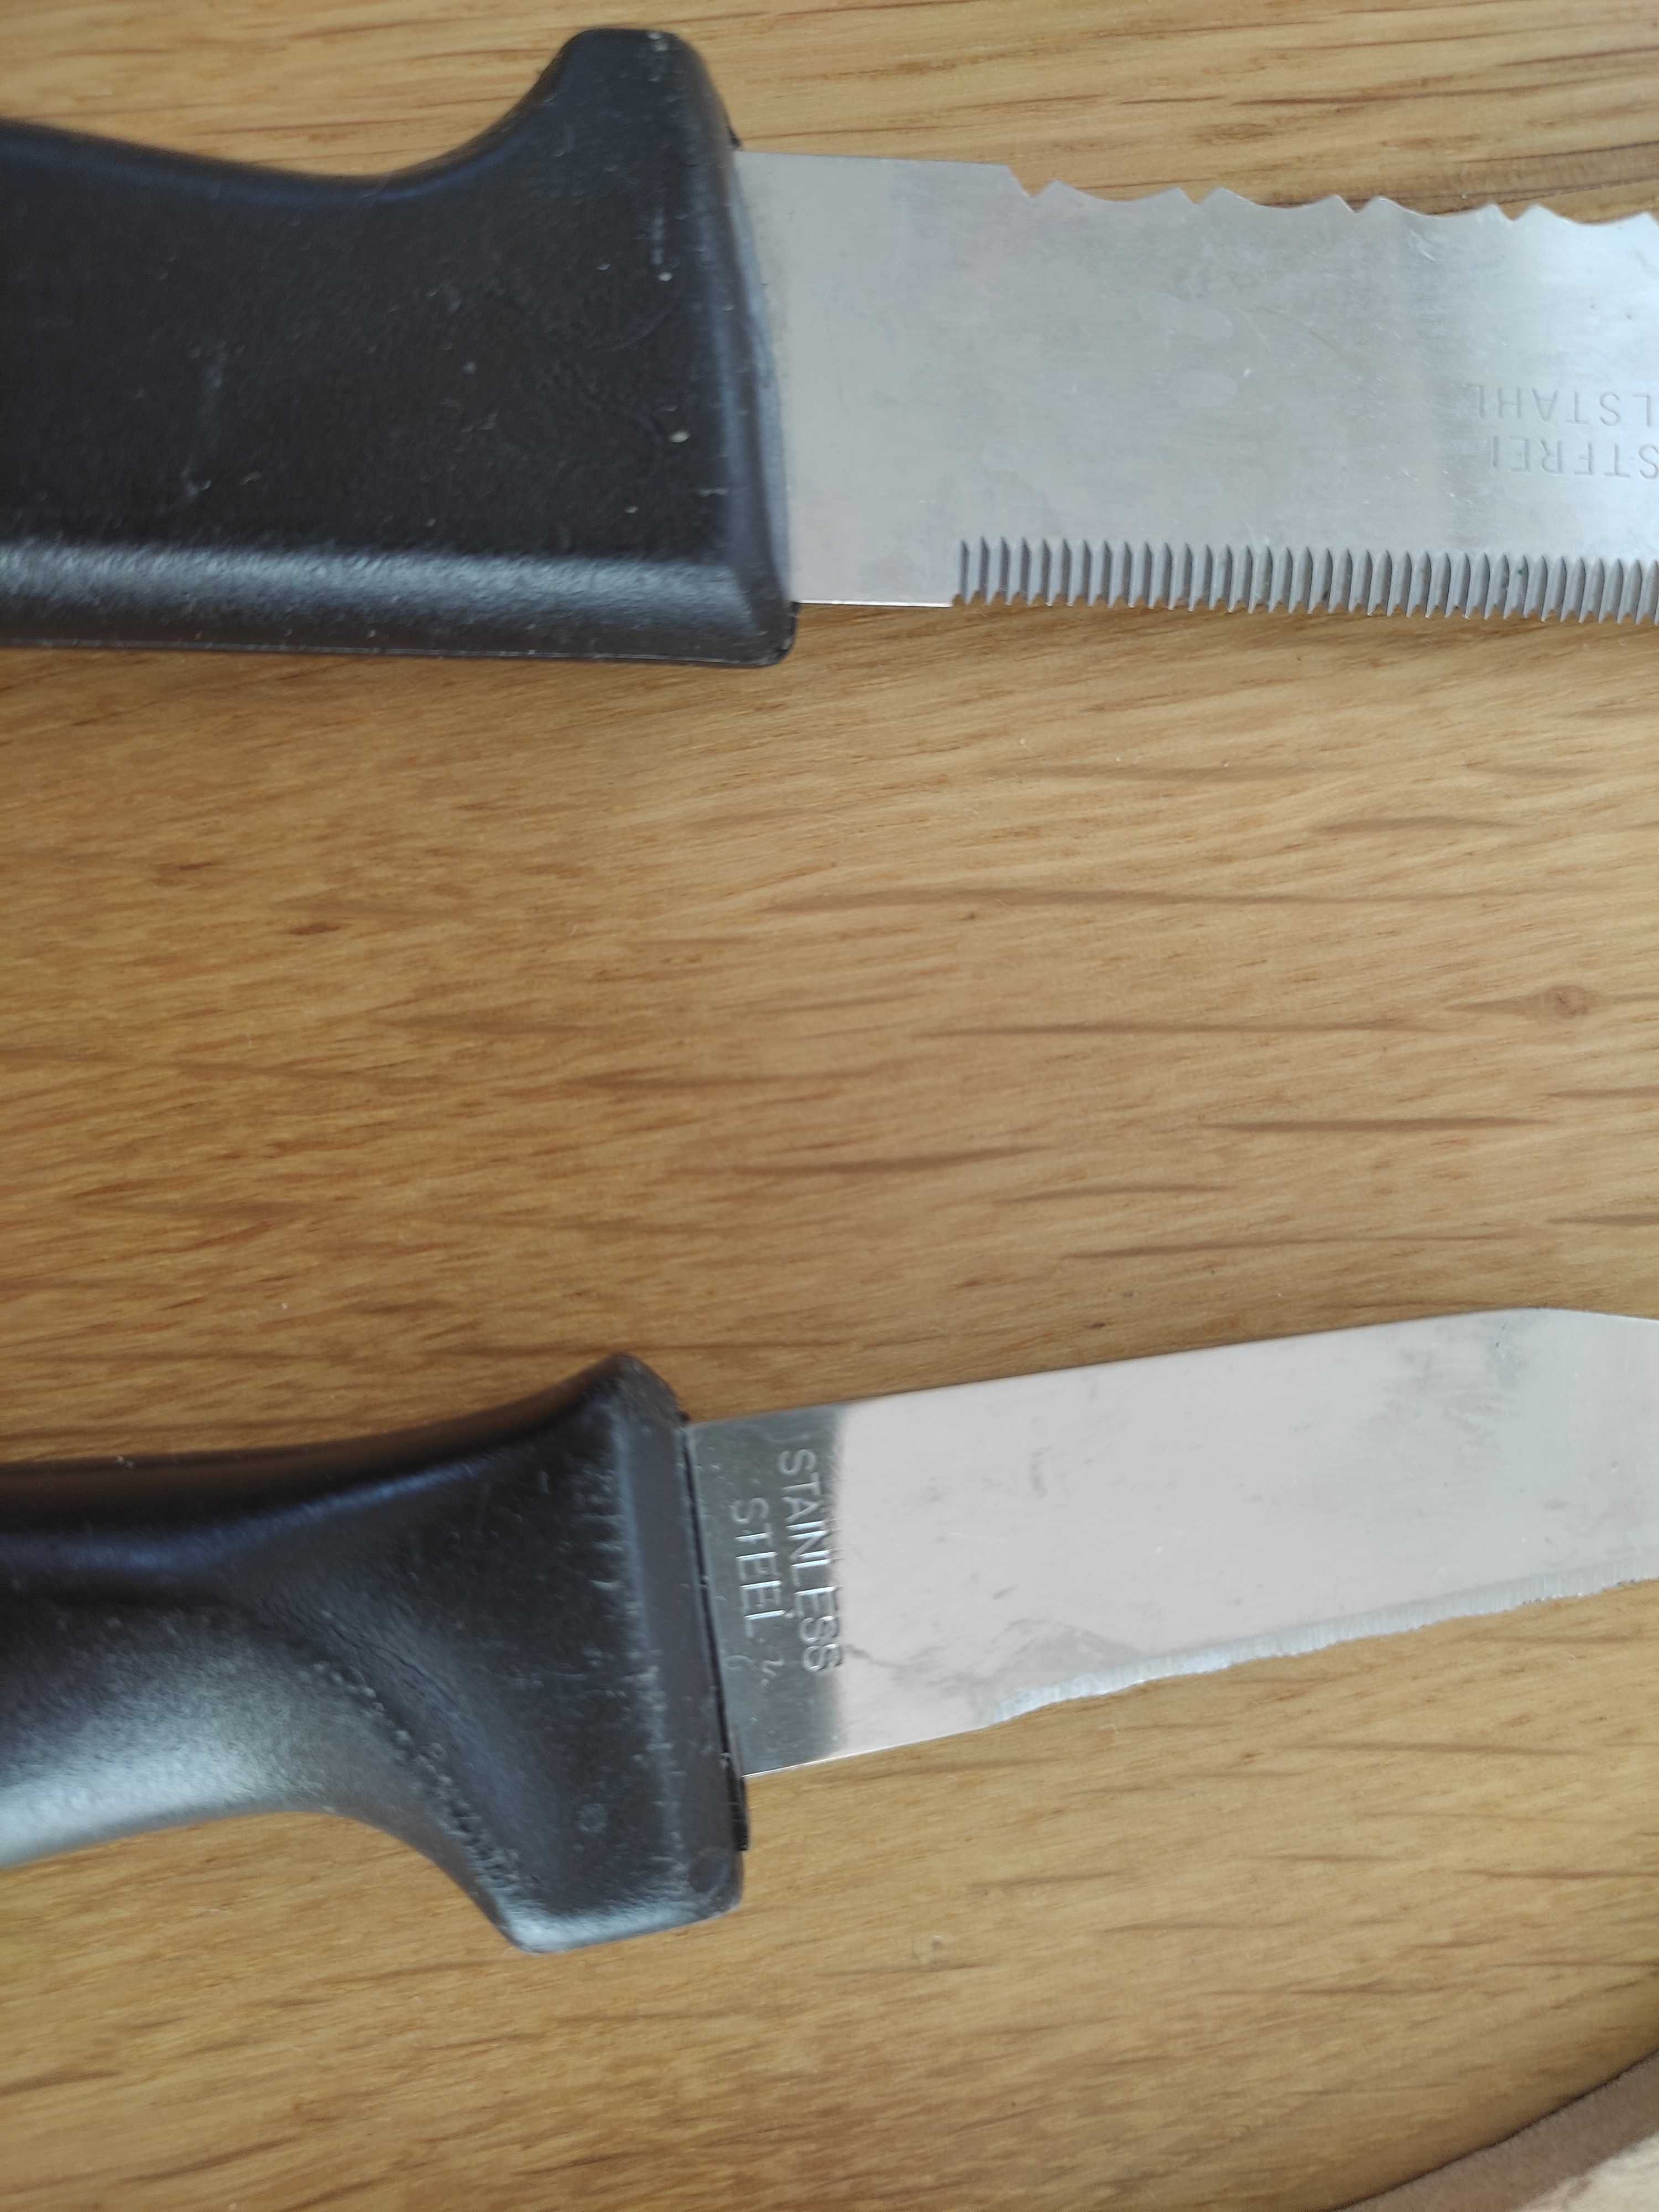 5 szt zestaw przyborów kuchennych noże